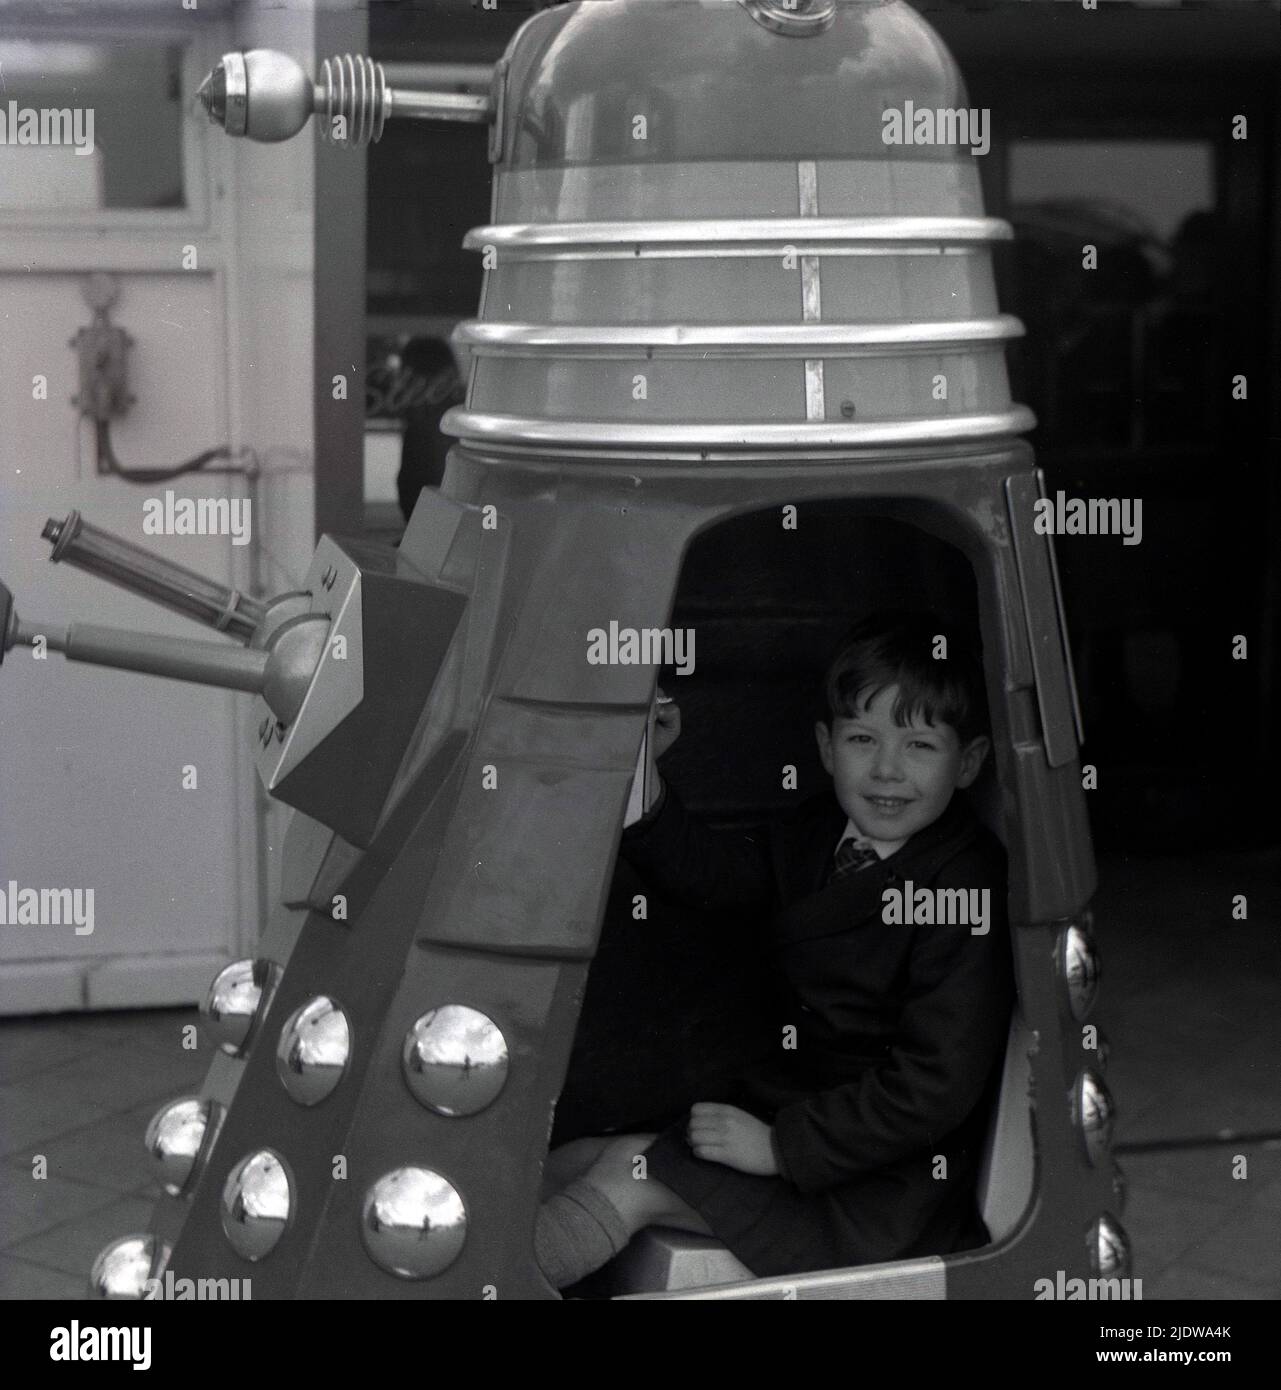 1967, historique, un jeune garçon assis dans un Dalek, Angleterre, Royaume-Uni. Une race extraterrestre fictive de mutants ou de robots, les Daleks sont apparus pour la première fois dans le programme de télévision de science-fiction Briitsh Doctor Who en 1963. Créé par Terry Nation, les Daleks sont rapidement devenus le personnage le plus populaire du BBC. Les extraterrestres ont été conçus par Raymond Cusick, qui, en tant qu'employé salarié de la BBC à l'époque, n'a reçu aucun des revenus générés par les marchandises Daleks, contrairement à Nation qui l'a fait, tout comme un auteur de script indépendant. Banque D'Images